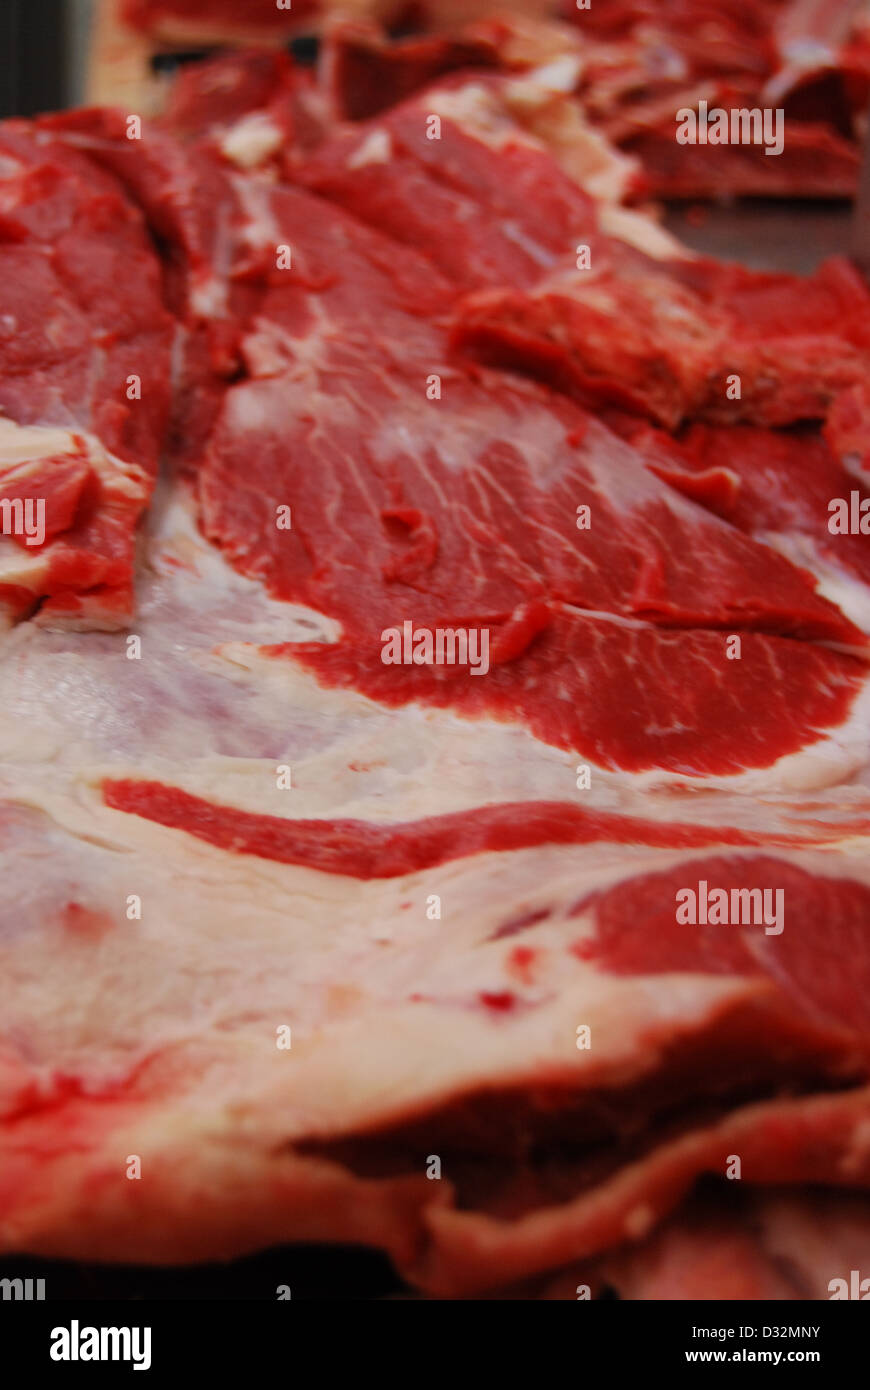 Platten von rotem und weißem Fleisch und Knochen mit Fett auf einem unordentlichen Metzger Tisch bereit, geschnitten und sortiert werden. Stockfoto